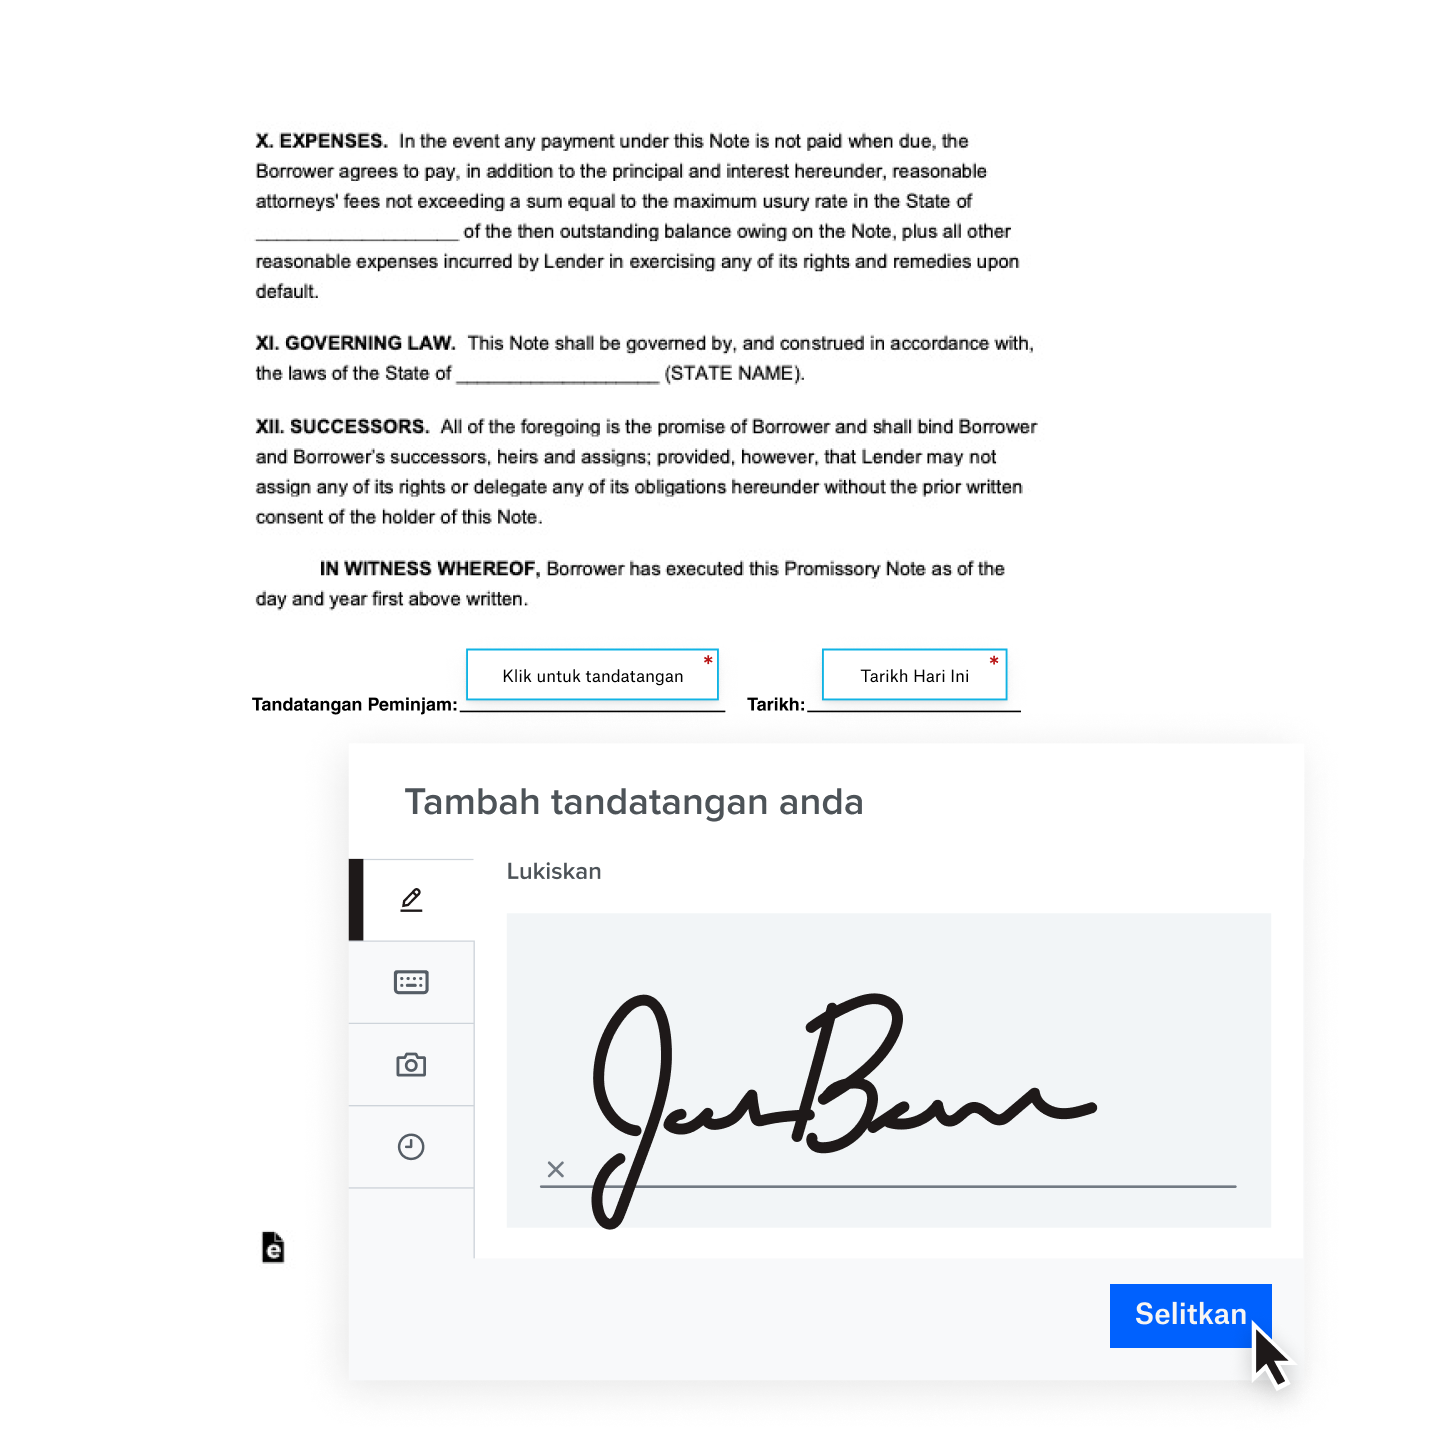 Tandatangan digital tulisan tangan ditambahkan pada kontrak